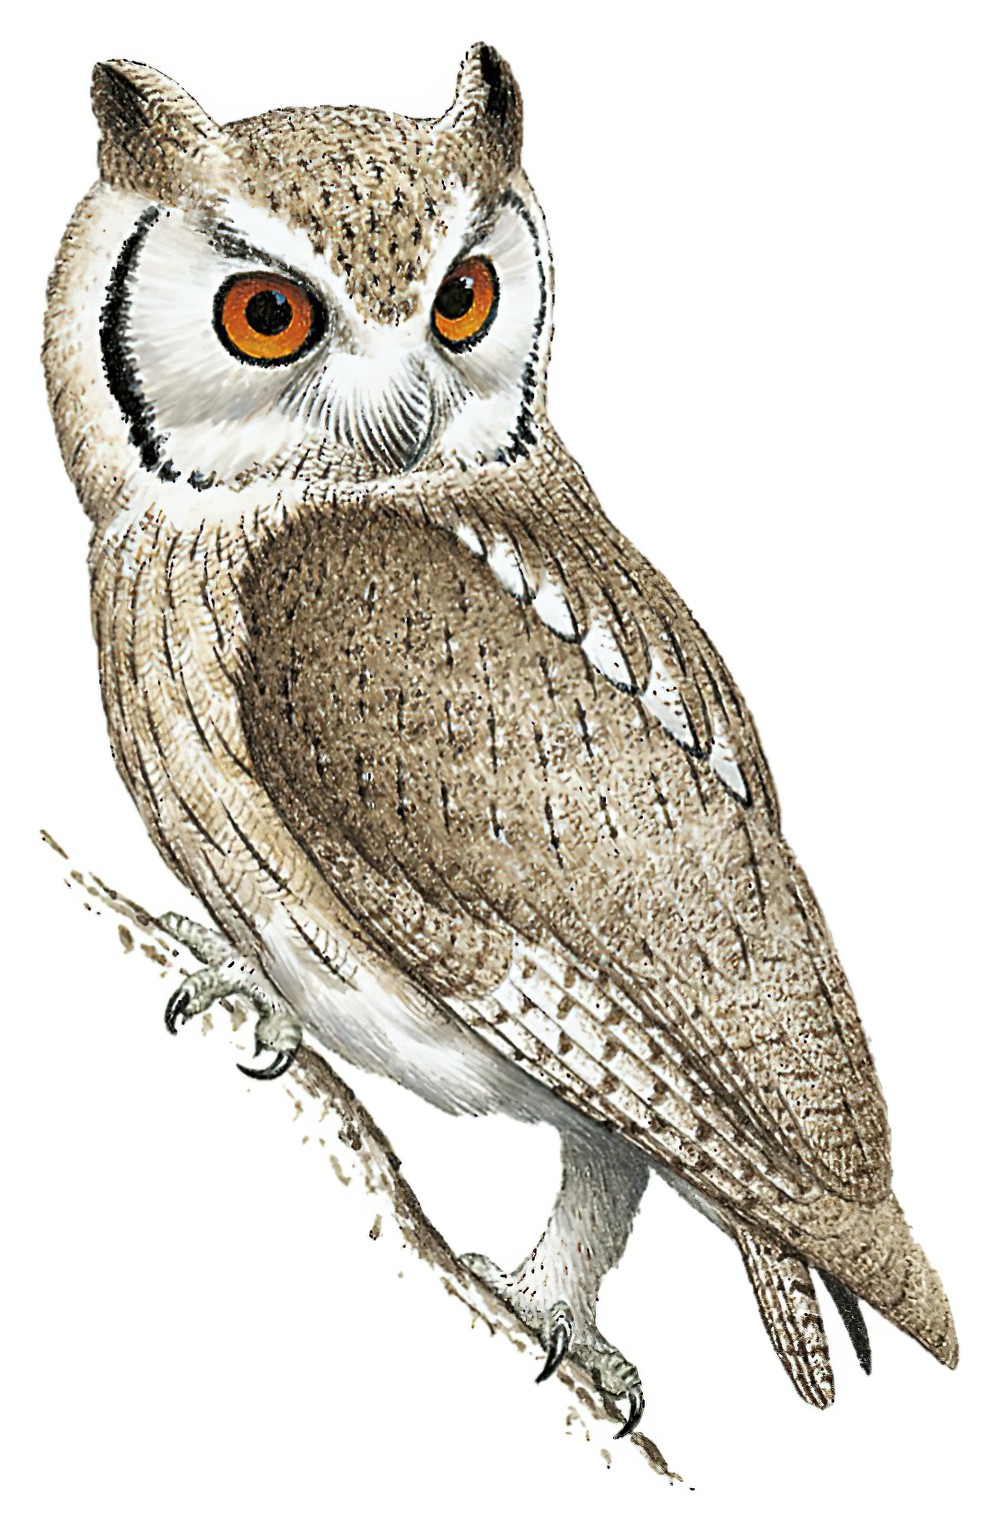 Northern White-faced Owl / Ptilopsis leucotis